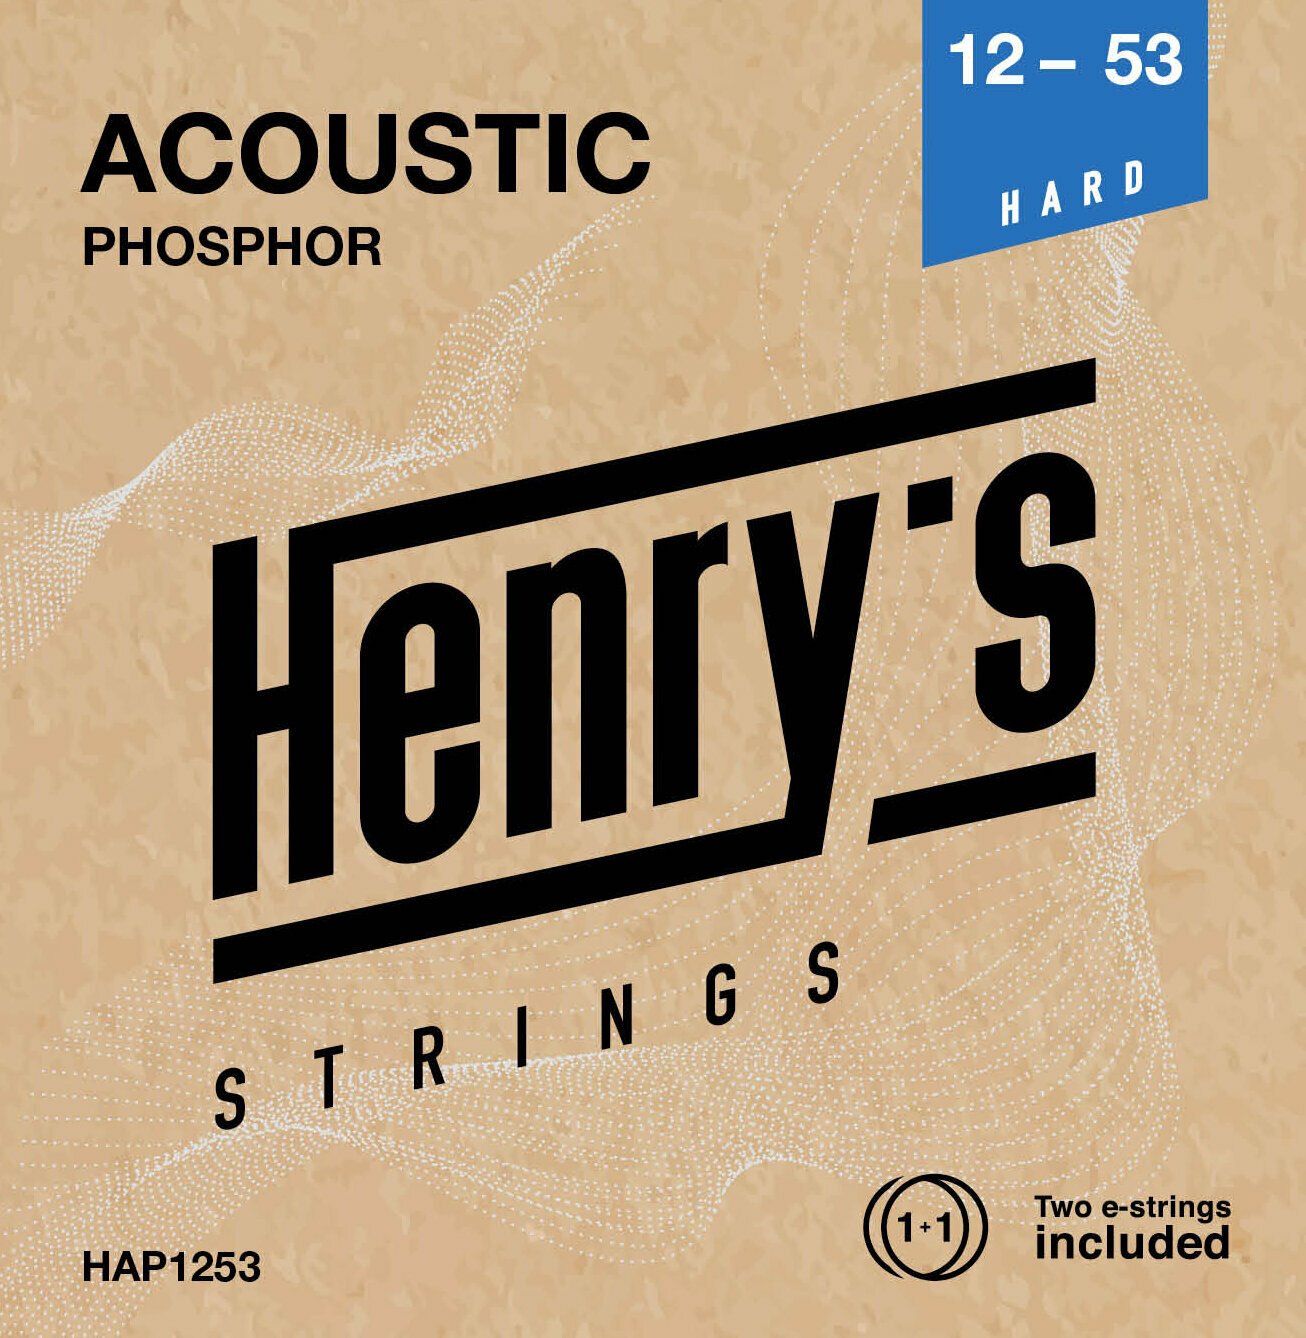 Guitar strings Henry's Phosphor 12-53